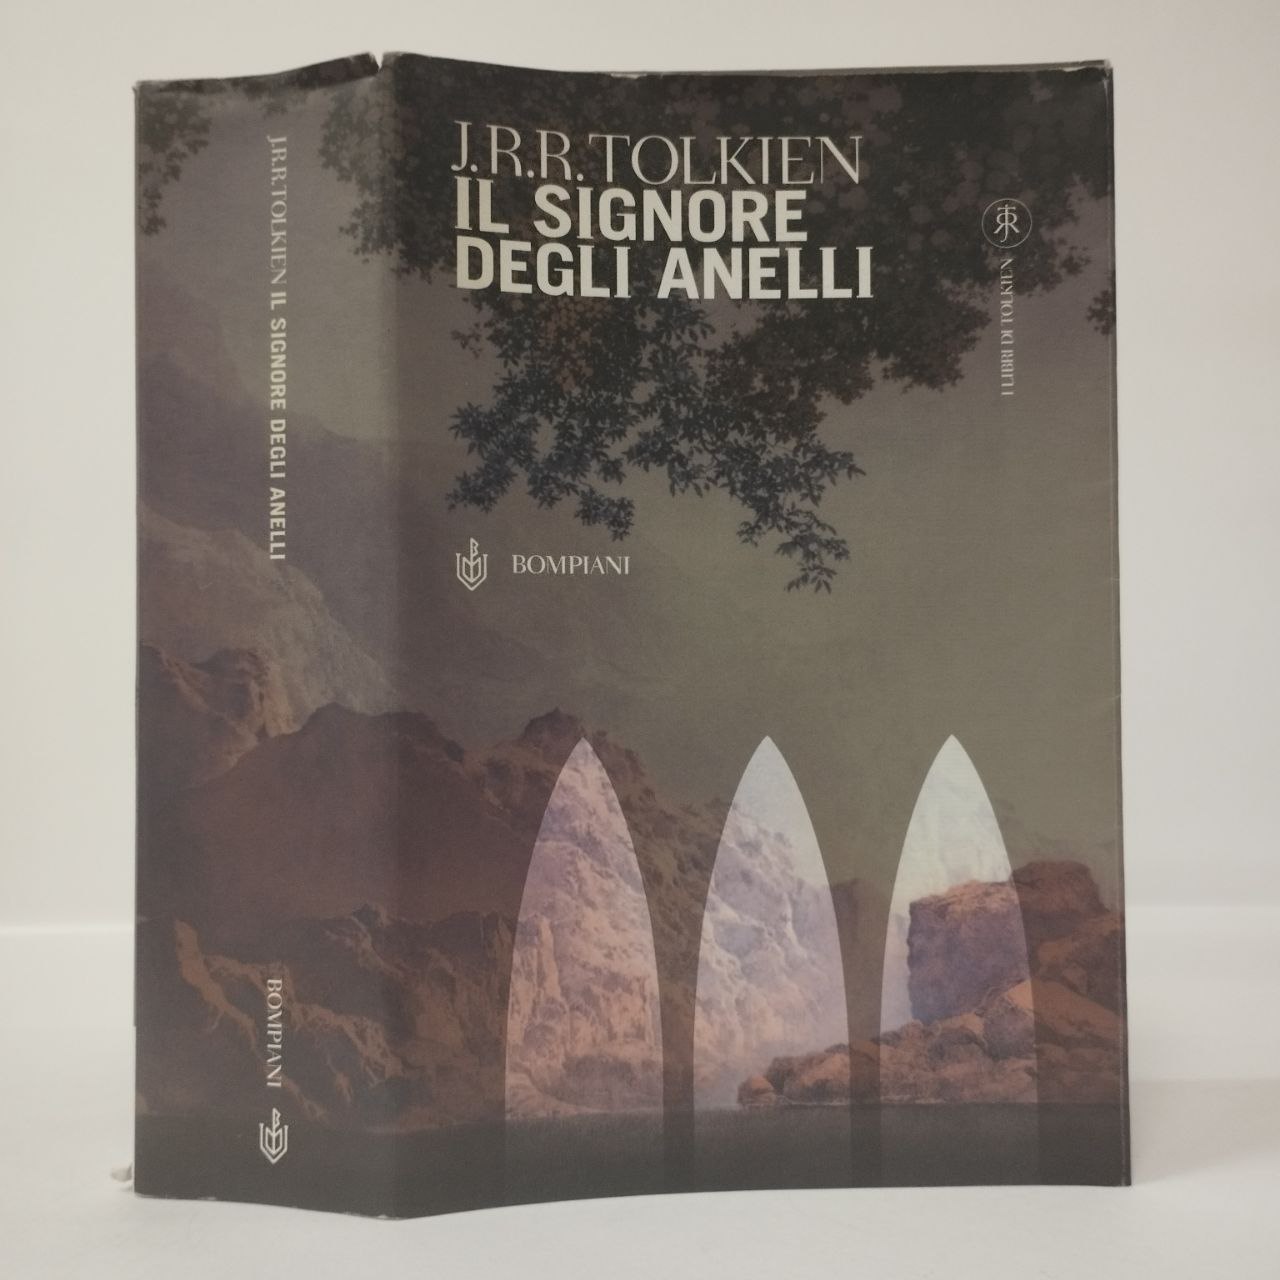 Il Signore degli anelli. Trilogia. Tolkien J.R.R.. Bompiani, 2002. -  Equilibri Libreria Torino